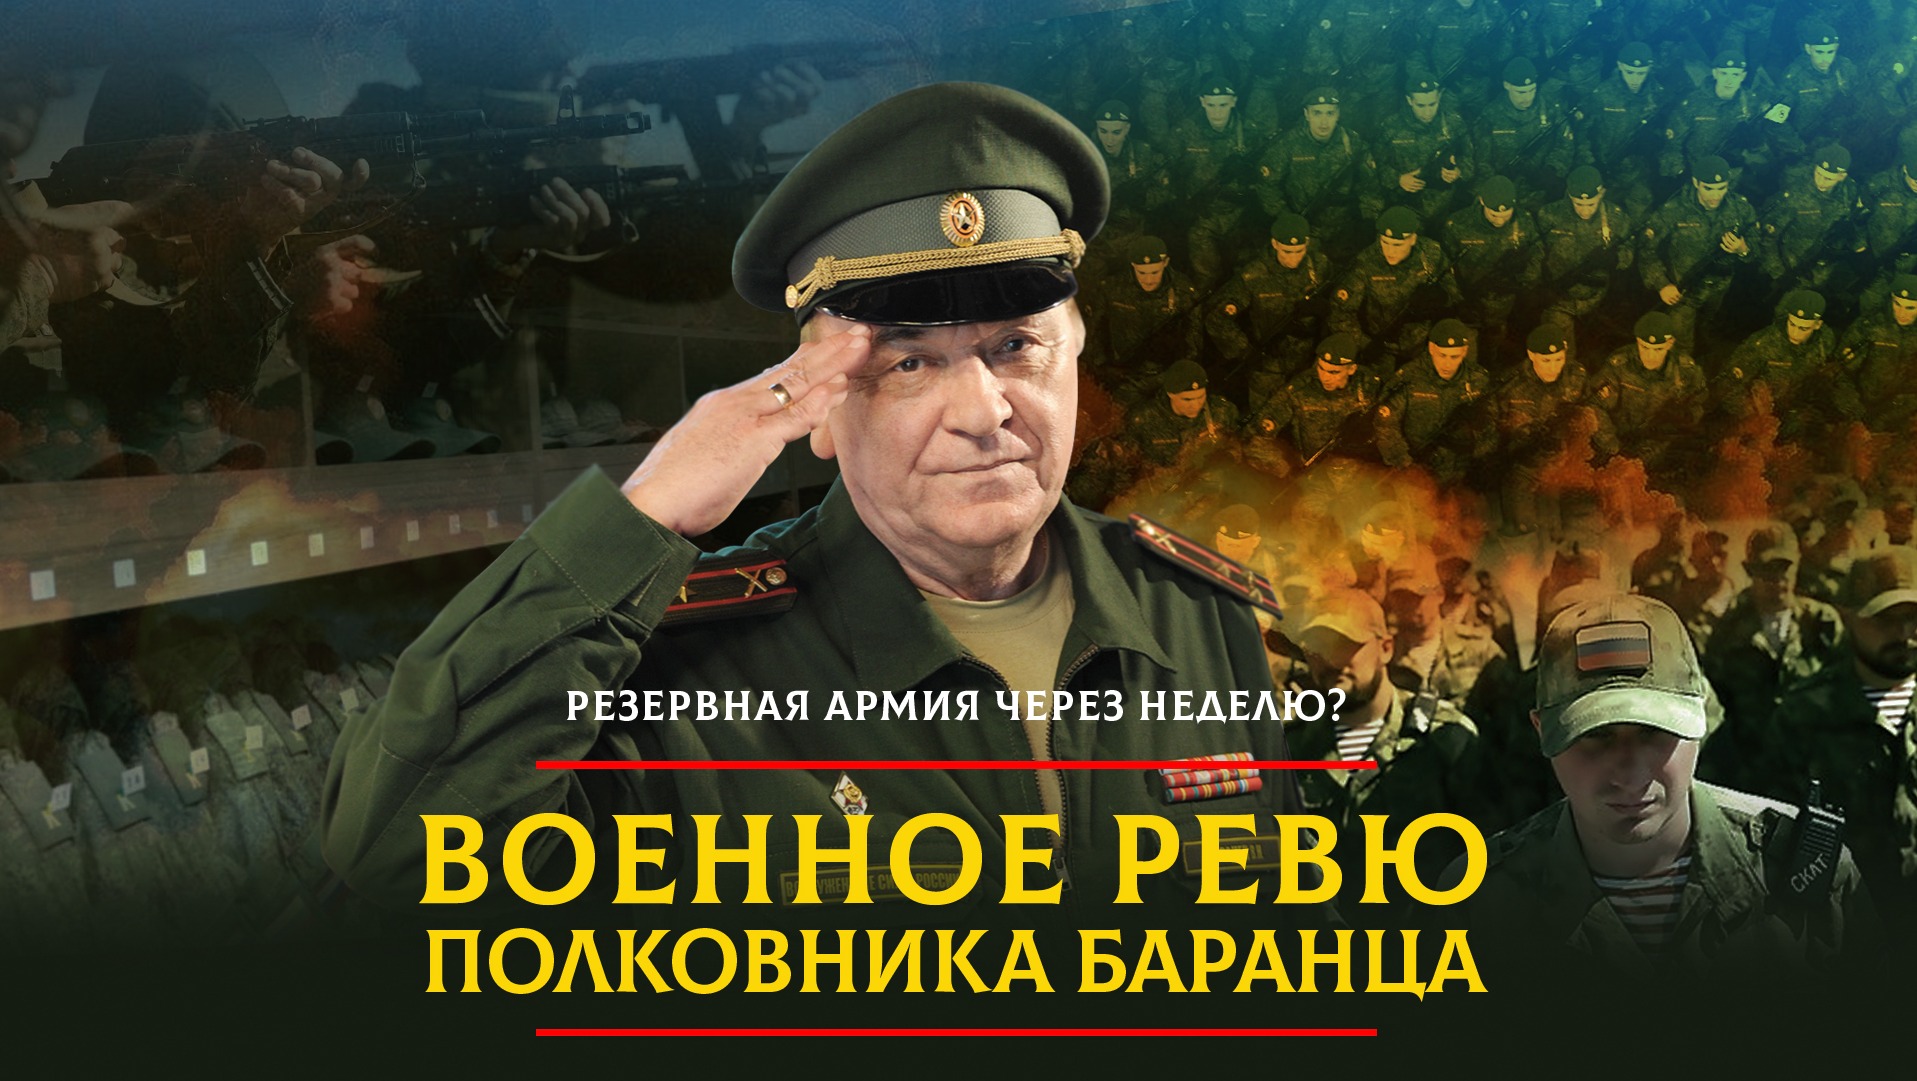 Комсомольская правда военное ревю баранца сегодня. Полковник Баранец.